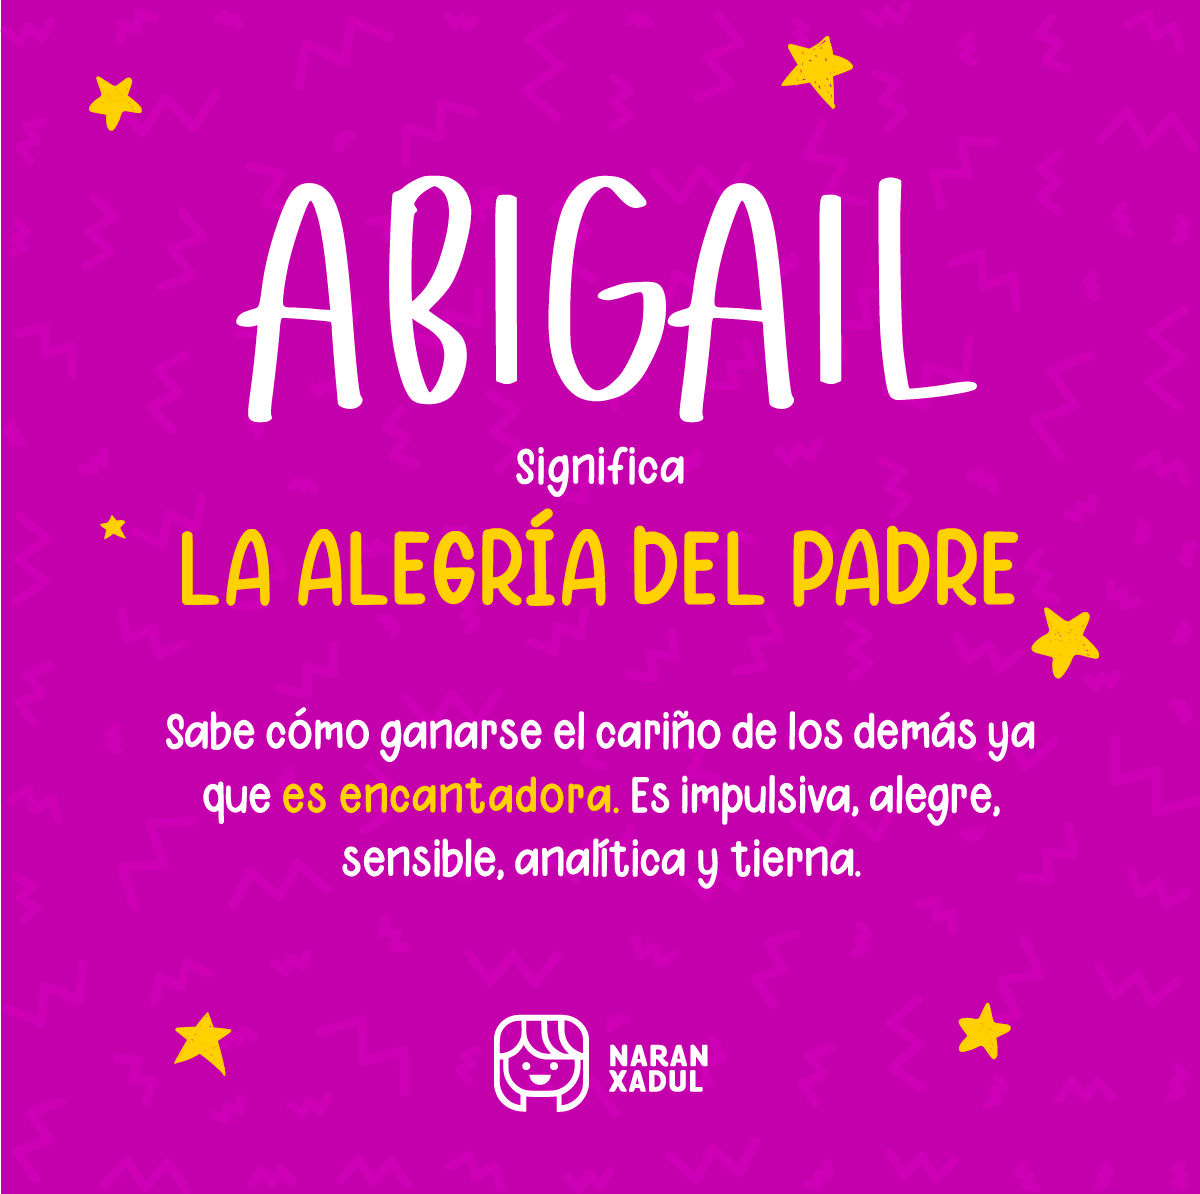 Significado de Abigail